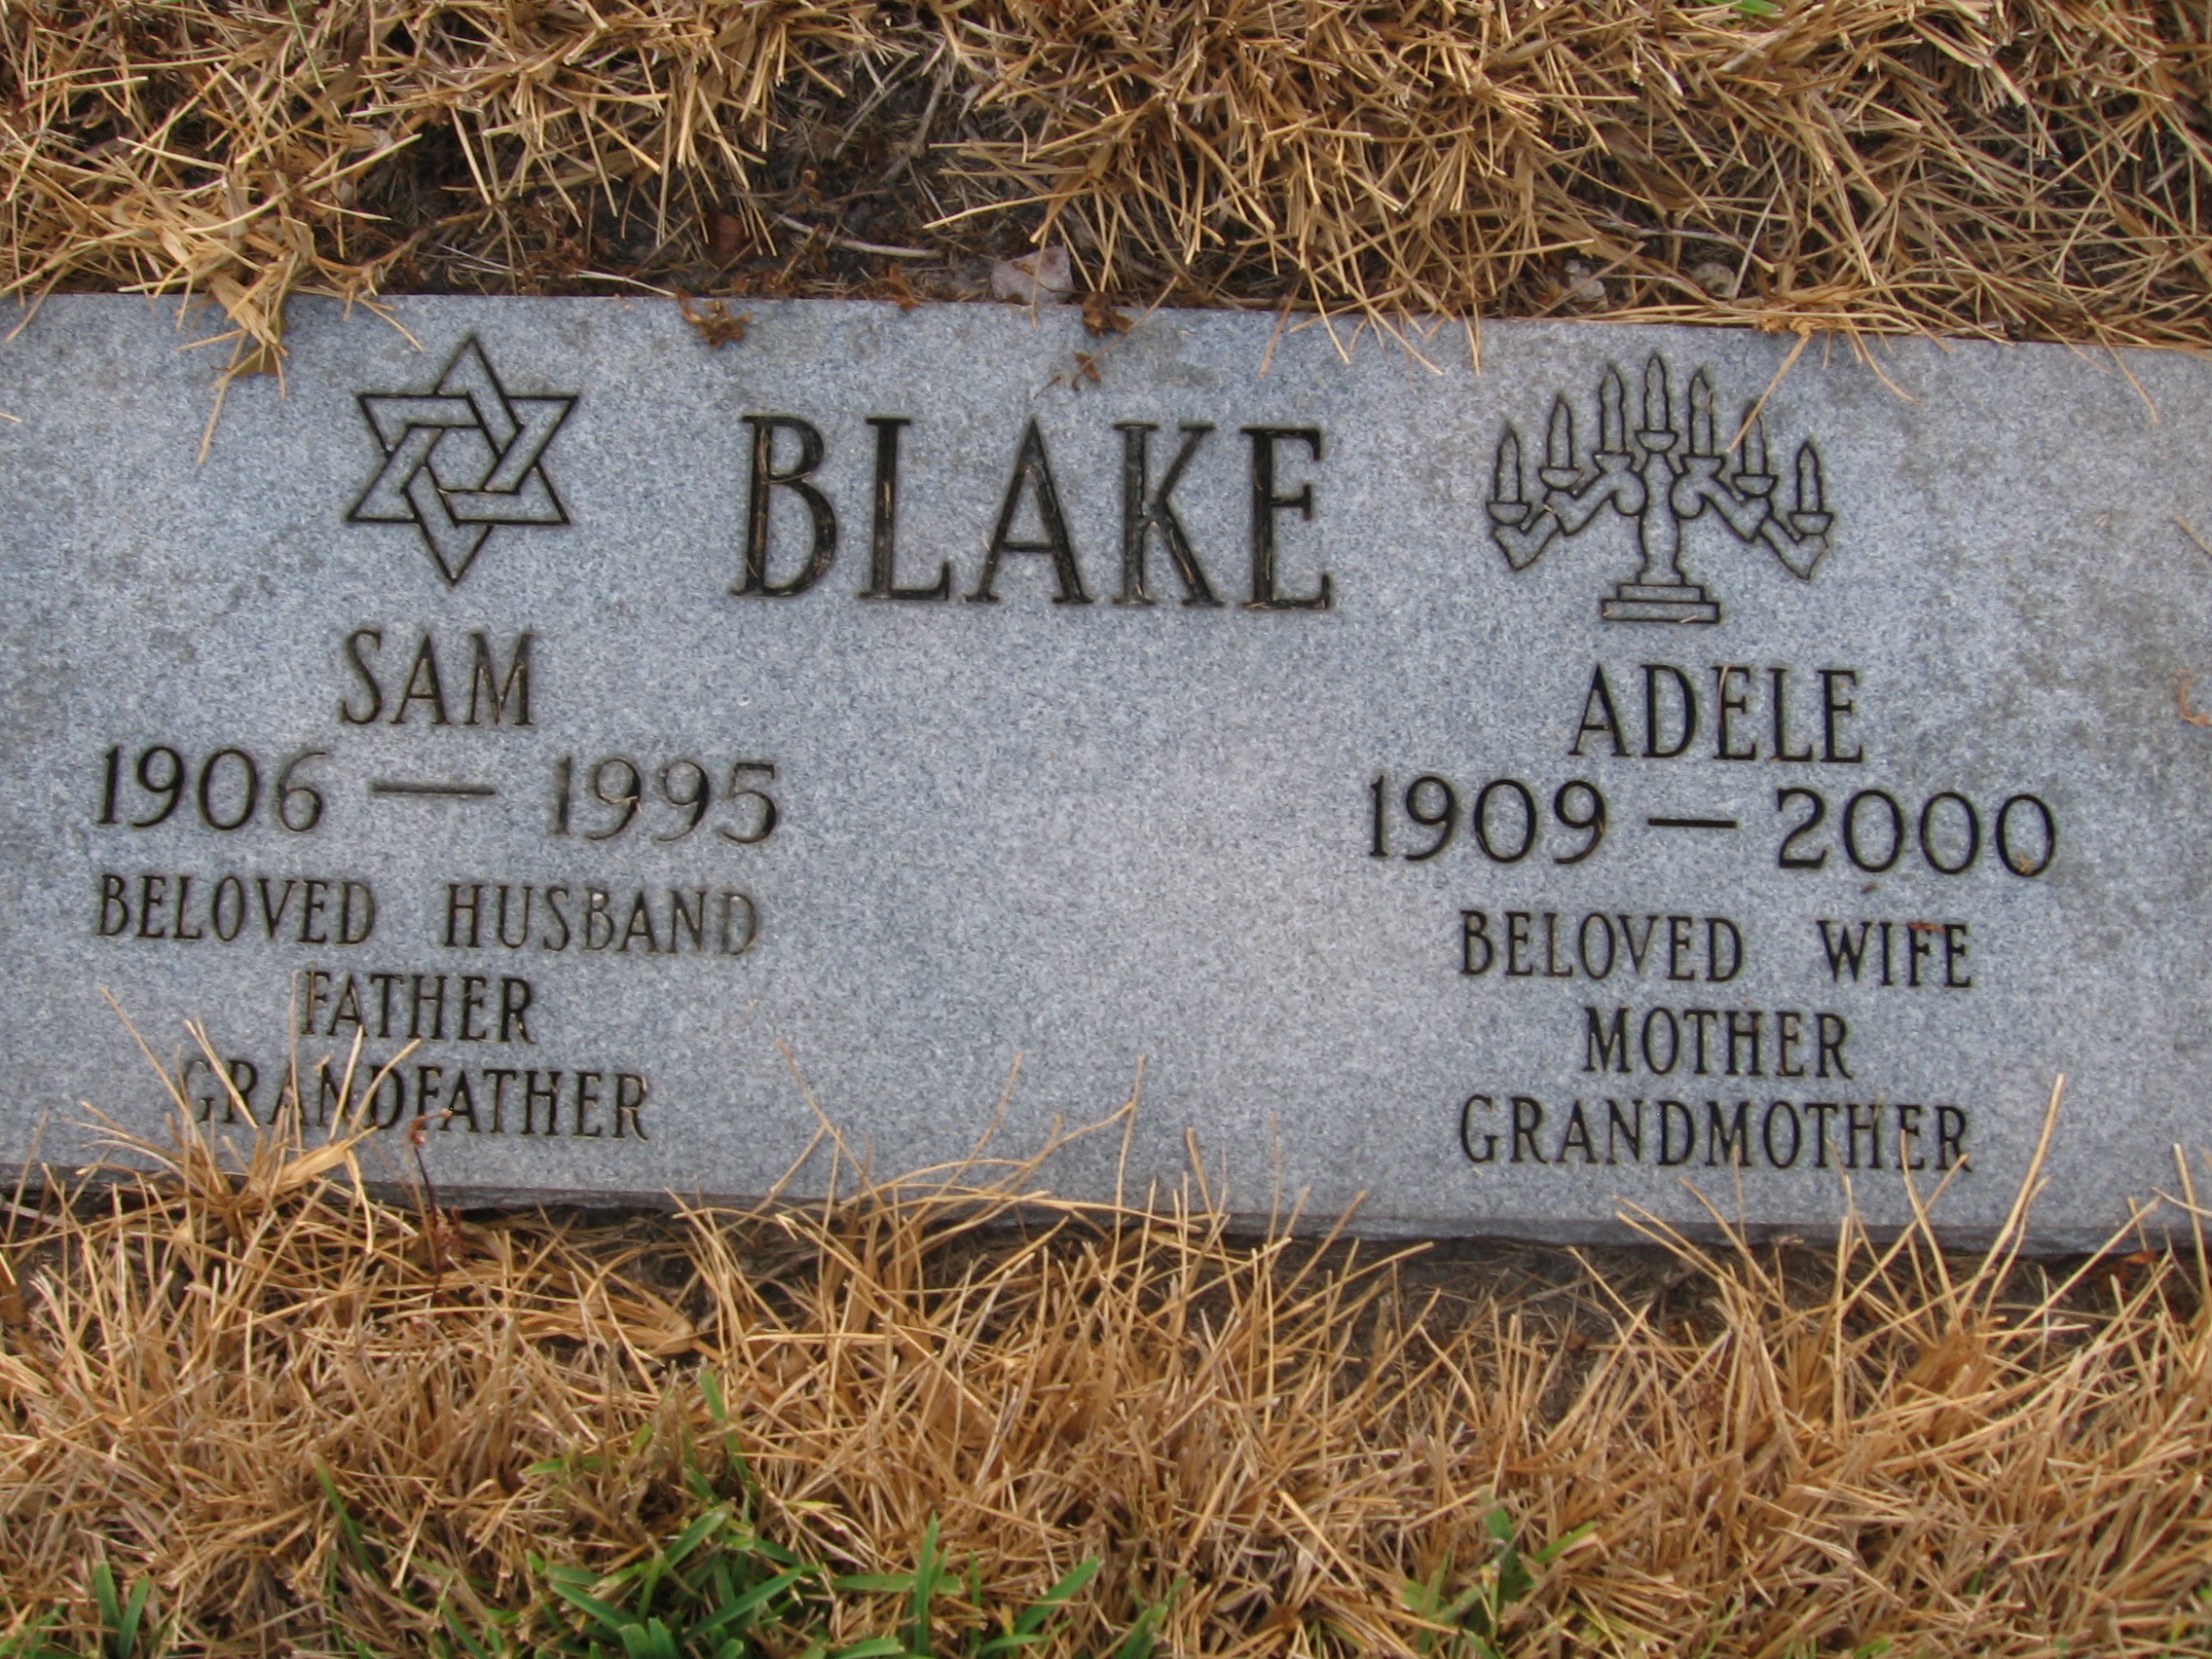 Adele Blake